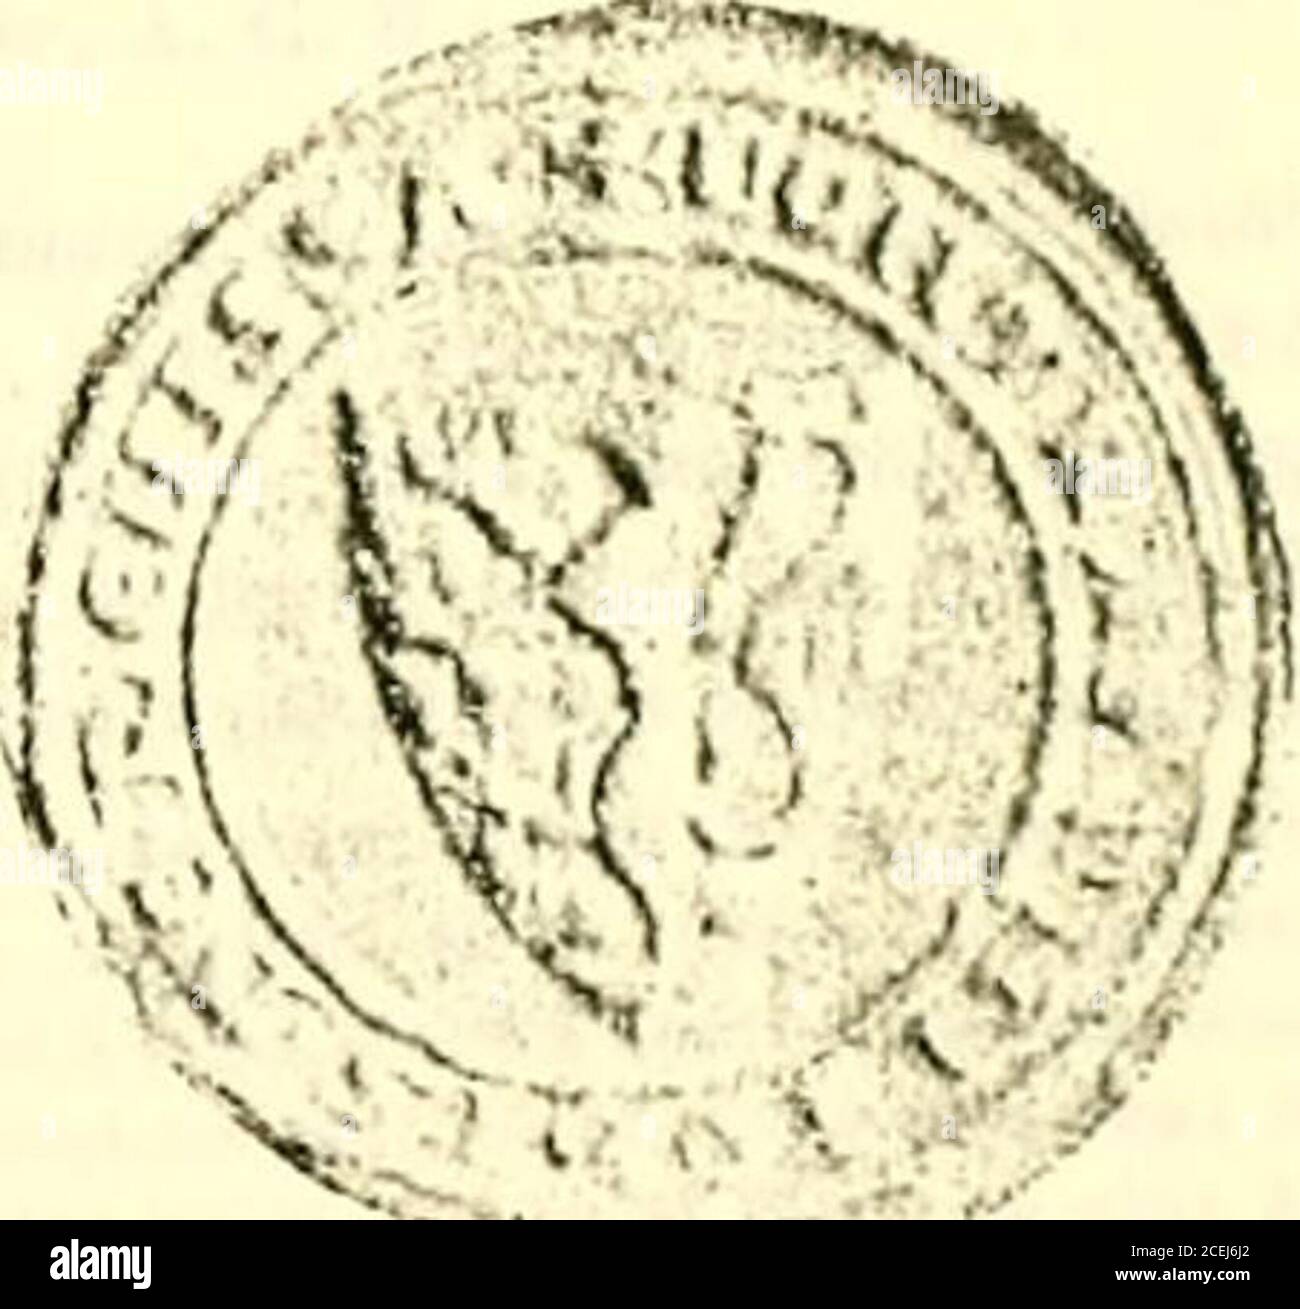 . Sceaux armoríes des Pays-Bas et des Pays avoisinants (Belgique--Royaume des Pays-Bas--Luxembourg--Allemagne--France) recueil historique et héraldique. Abb. 2. Satz;. :4j. Abb. 2 et 3. Sceau et contre-scci de .leaii de Rencsse, chevalier (128.»). Bosch, Bossche, Busch, Bussche. .laii n:iii (!)/.■.wvr/i,. 11. ,lr lirï ,lu ihu- (le H.MII-»;!!,. (I;uis si&gt;^&lt; cl lie l.illc,; (Ulhs vui, dr lllls&gt;:,-hr (ii.i.,;.! :l .•;;-«). - Willcli lus il, Il isio truf li8T : 1 ■im^ lilTl.(IR llnllll (M:il.). - .Iran s: 11 .INI /;, ssrhc. Liilni (lit Ku.-K ■, lli llrll , ilil Clliili :i (;:iikI, Stockfoto